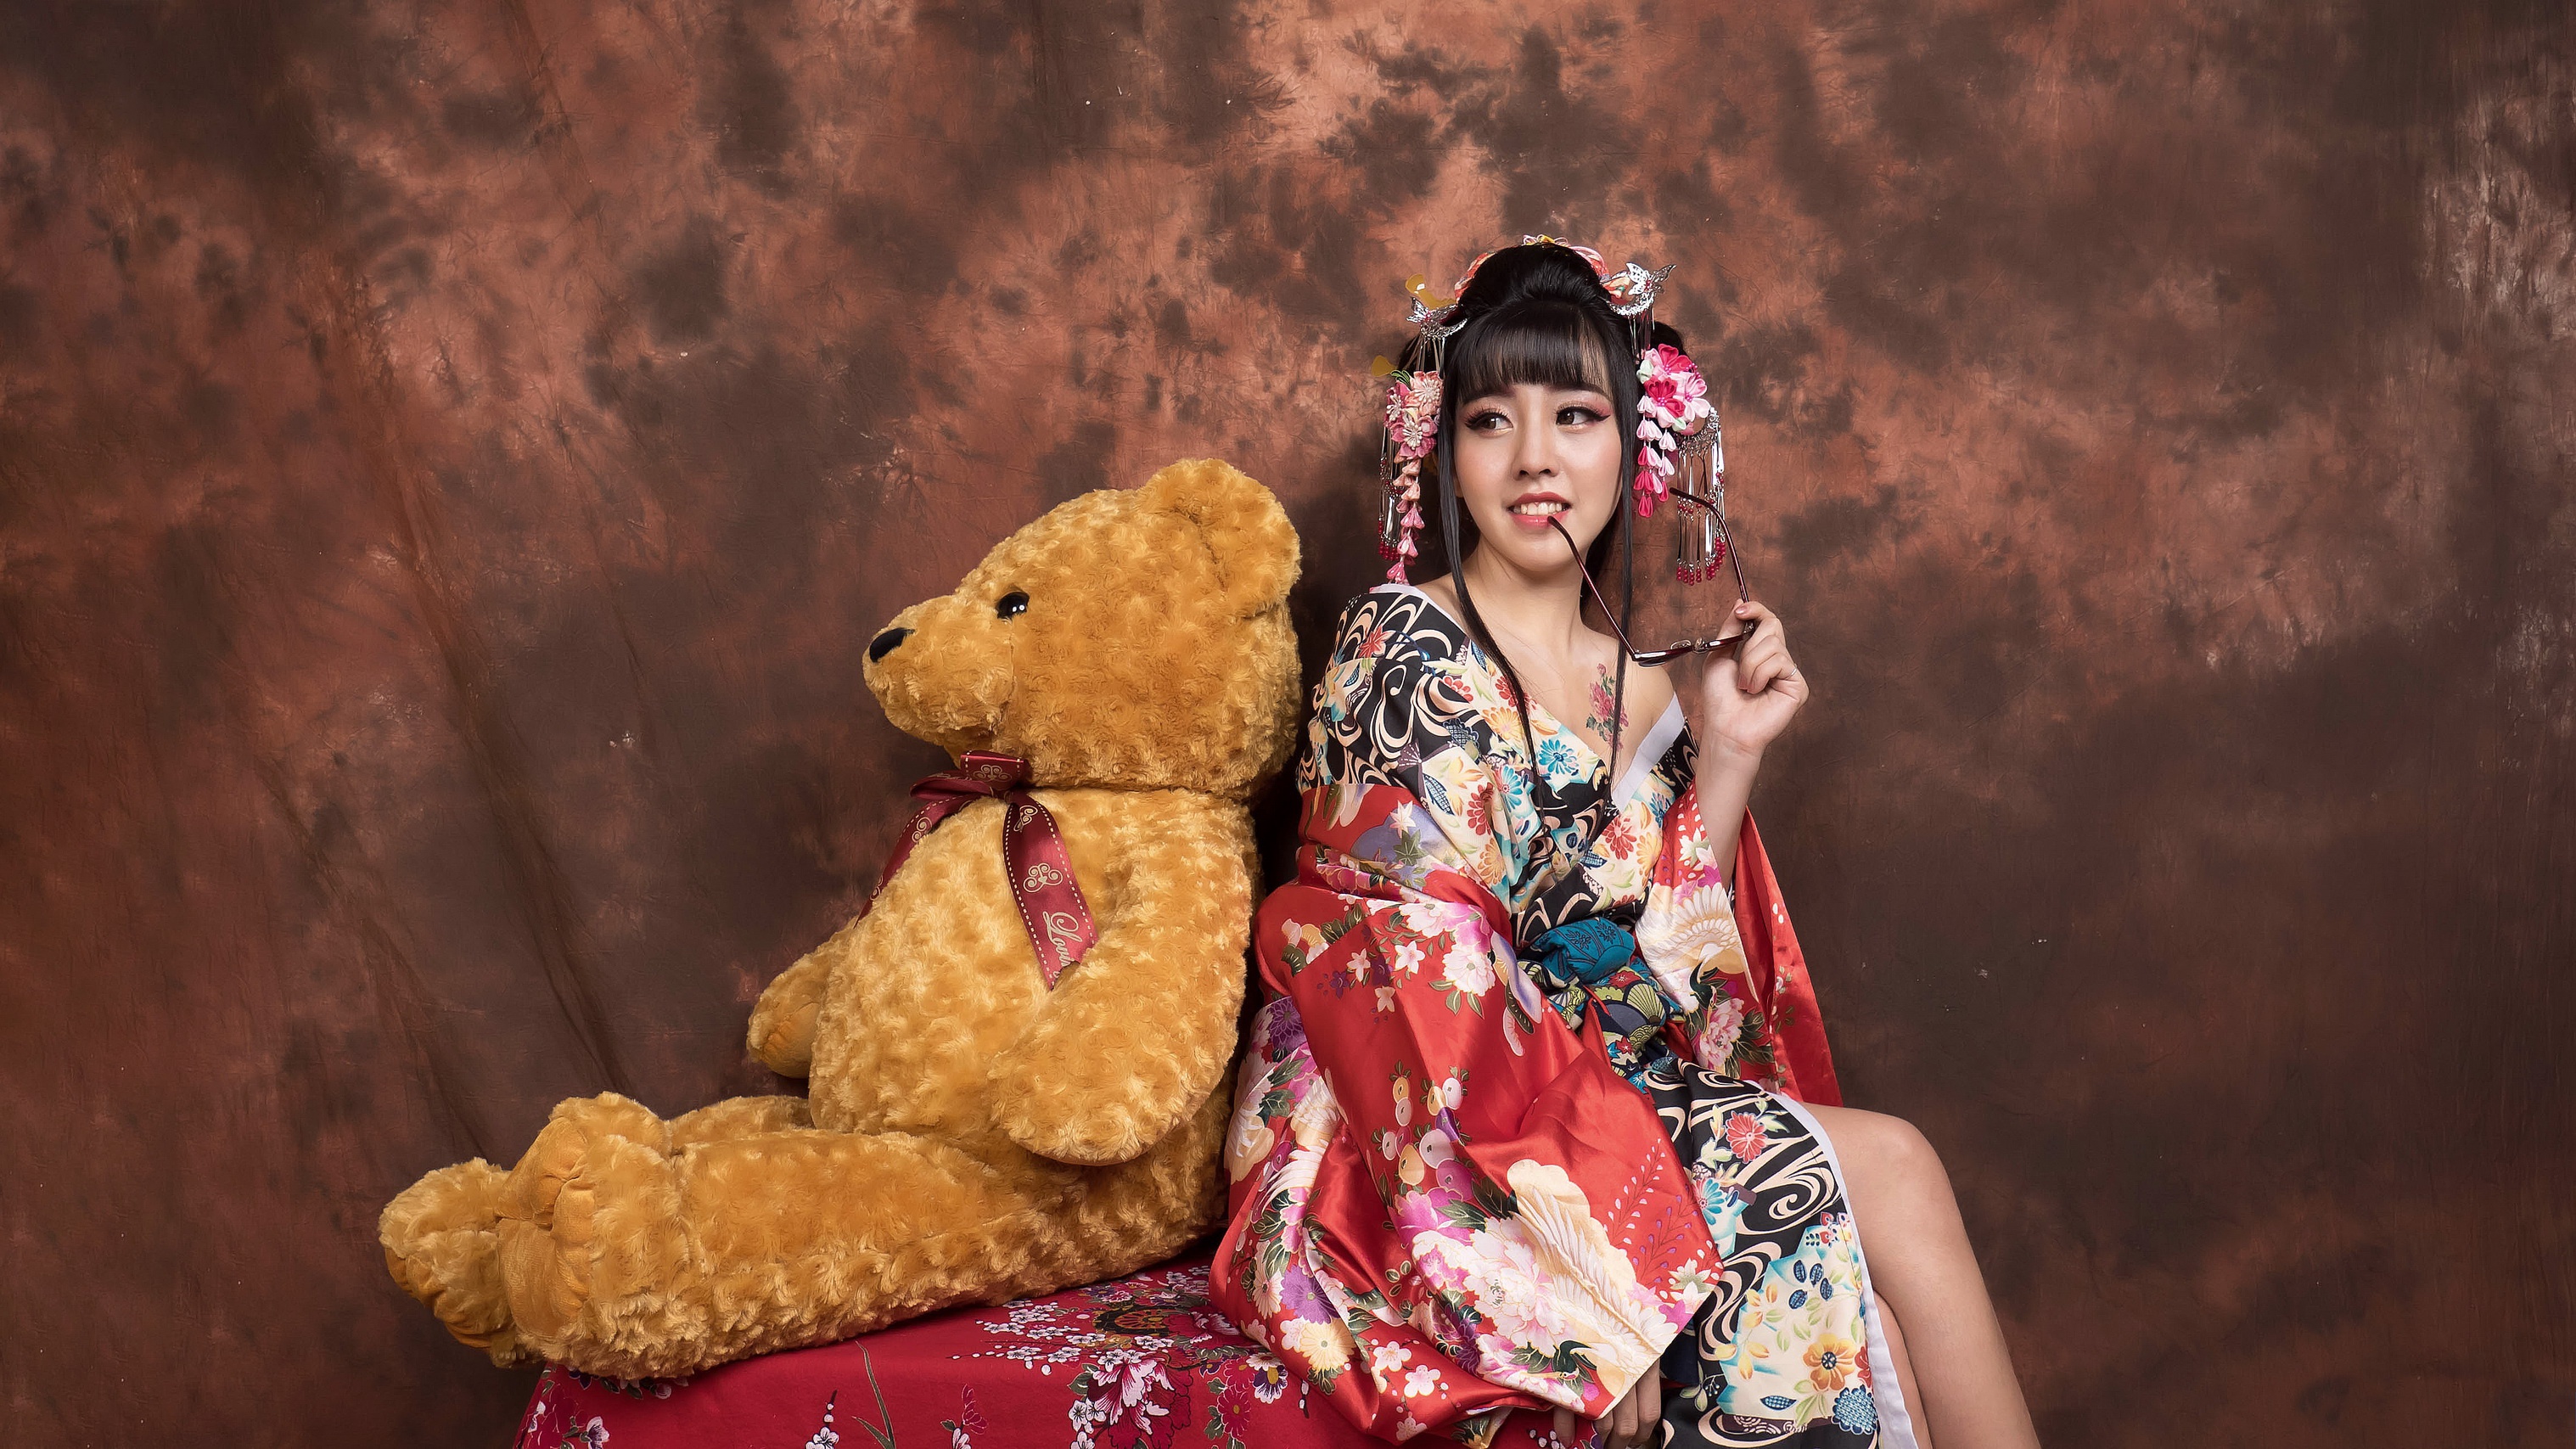 Download mobile wallpaper Teddy Bear, Smile, Kimono, Brunette, Model, Women, Asian, Stuffed Animal for free.